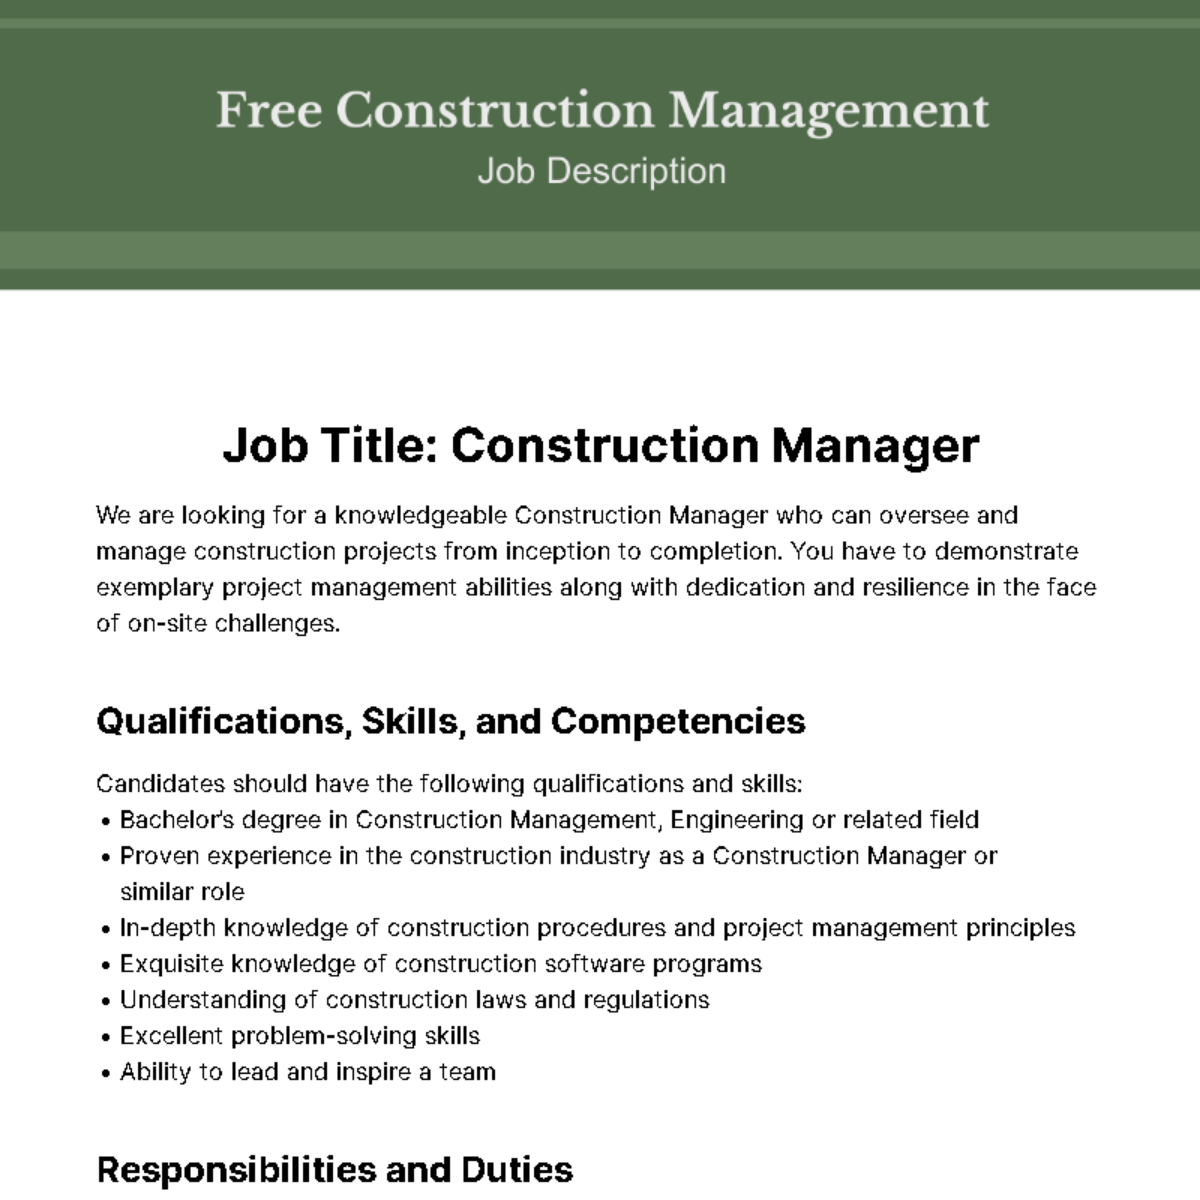 Construction Management Job Description Template